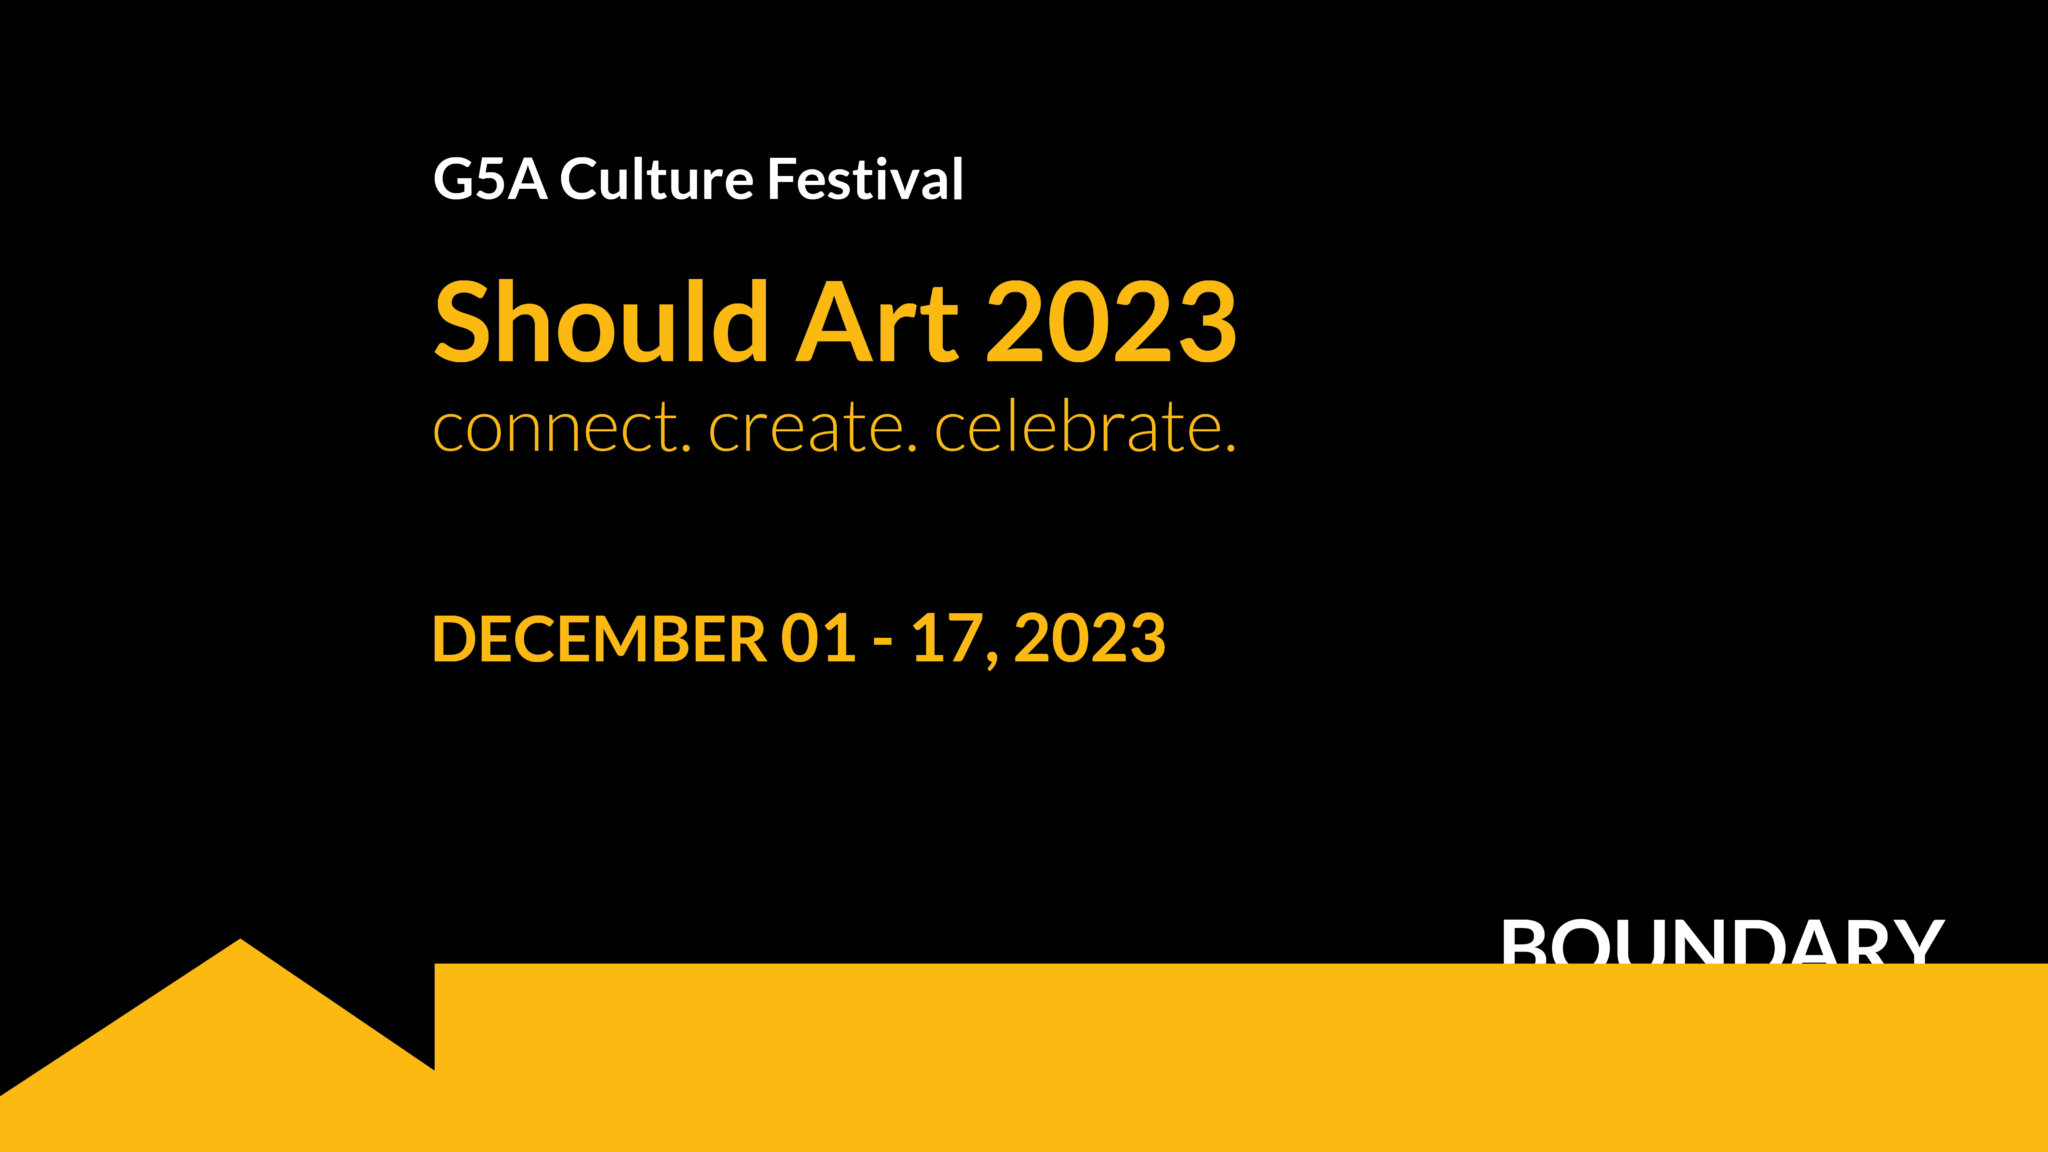 Should Art | G5A Culture Festival